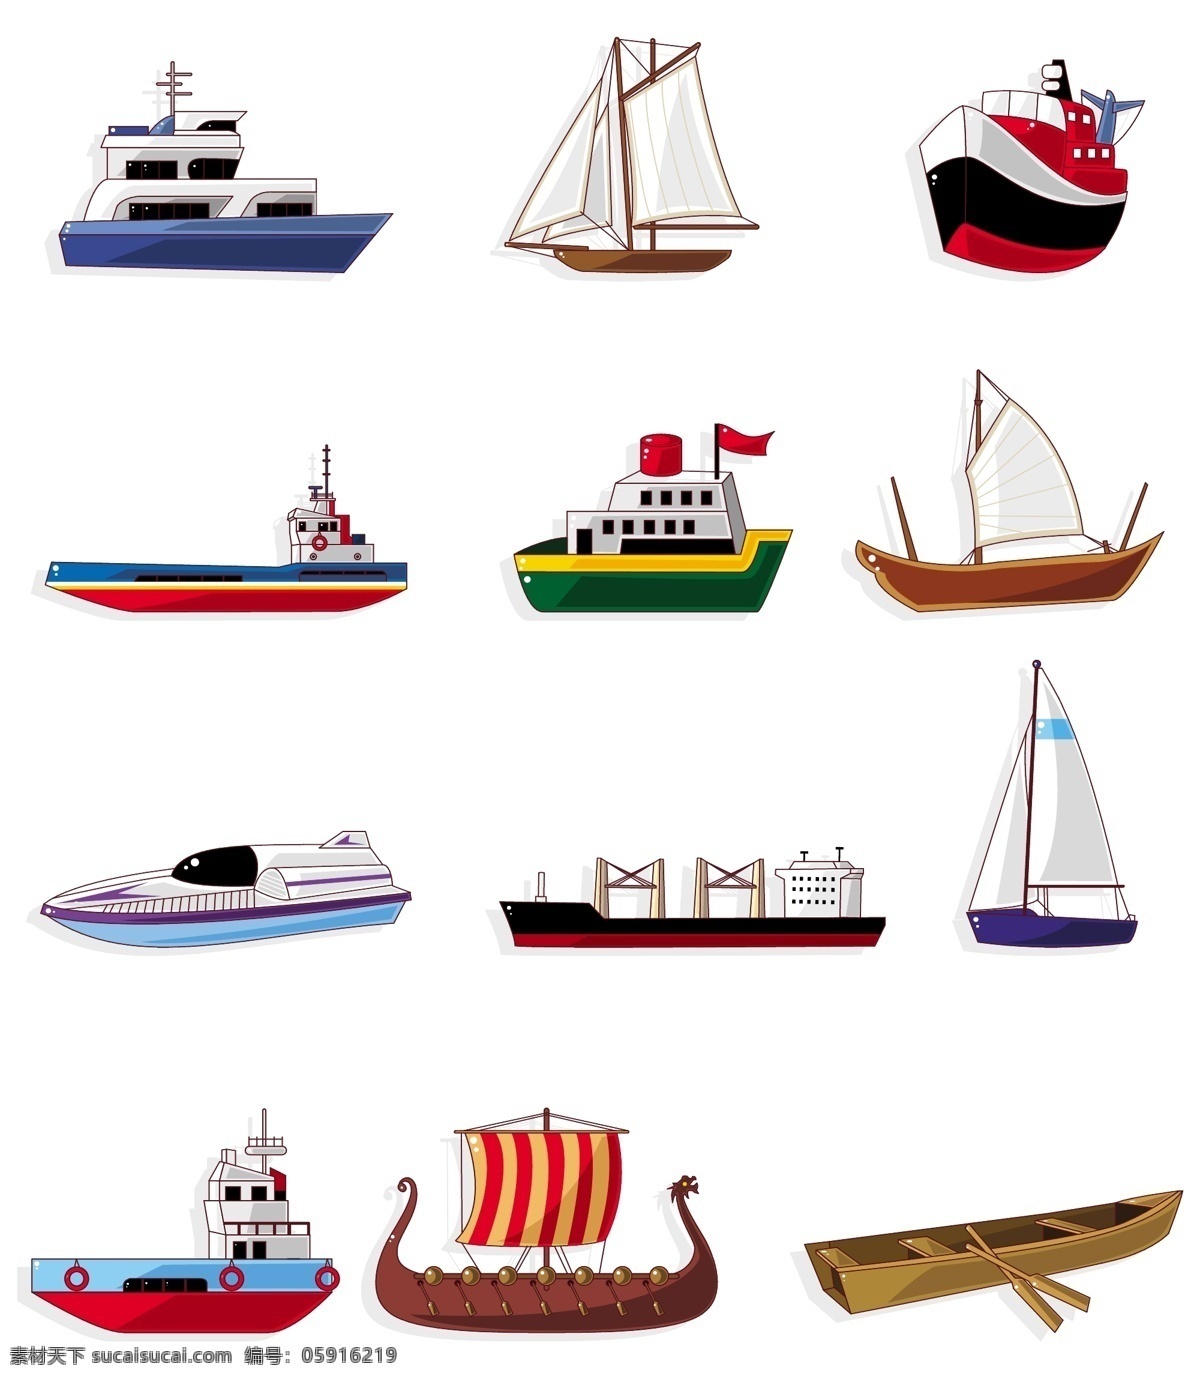 航海图标 航海 海洋 3d 立体 轮船 帆船 游艇 木船 各种船只 图标 矢量素材 矢量图标 小图标 标识标志图标 矢量